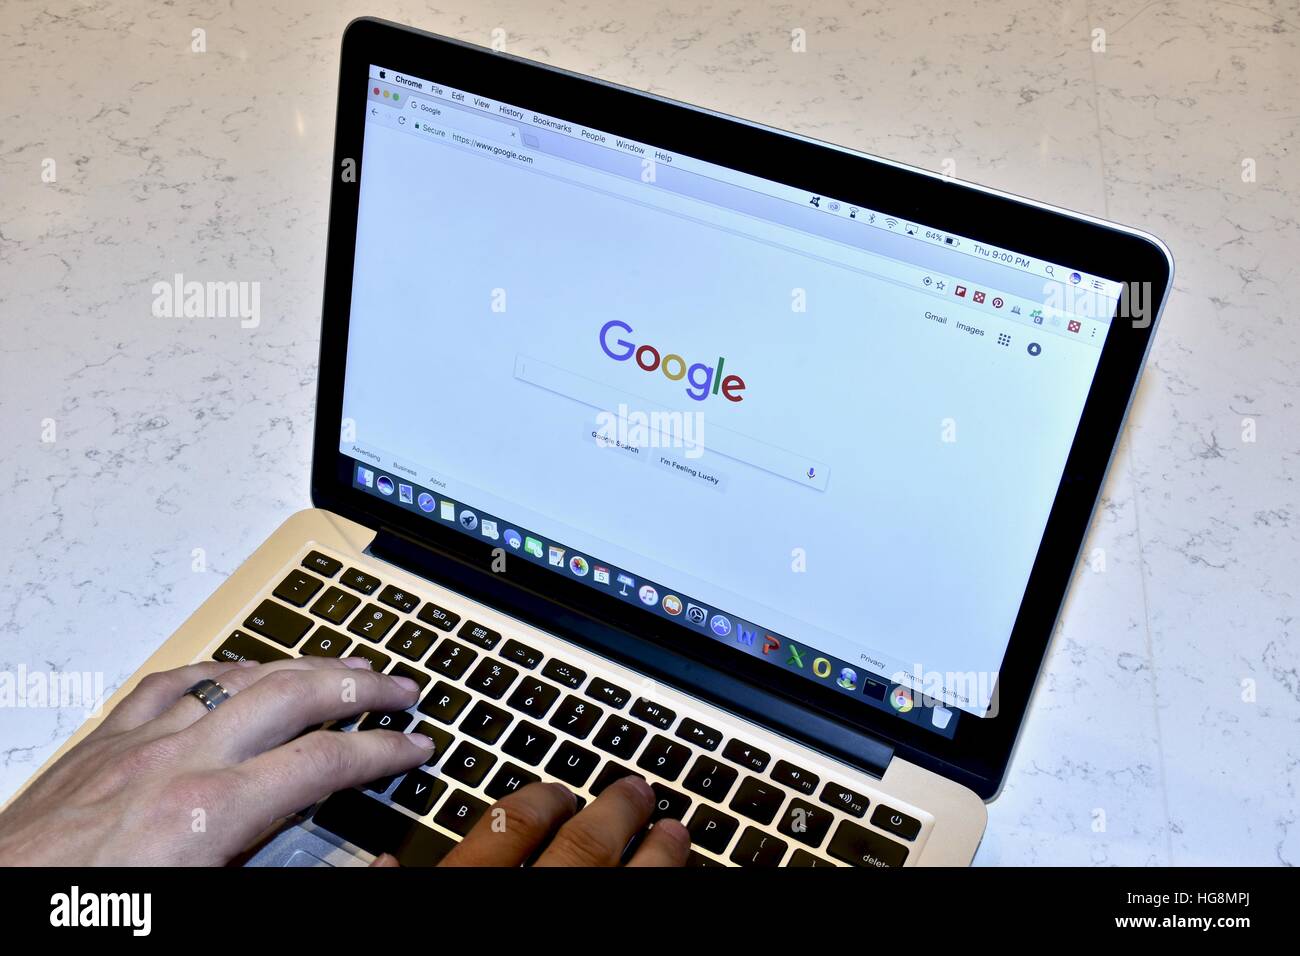 Un Apple Macbook Pro avec le moteur de recherche Google affiche sur l'écran Banque D'Images